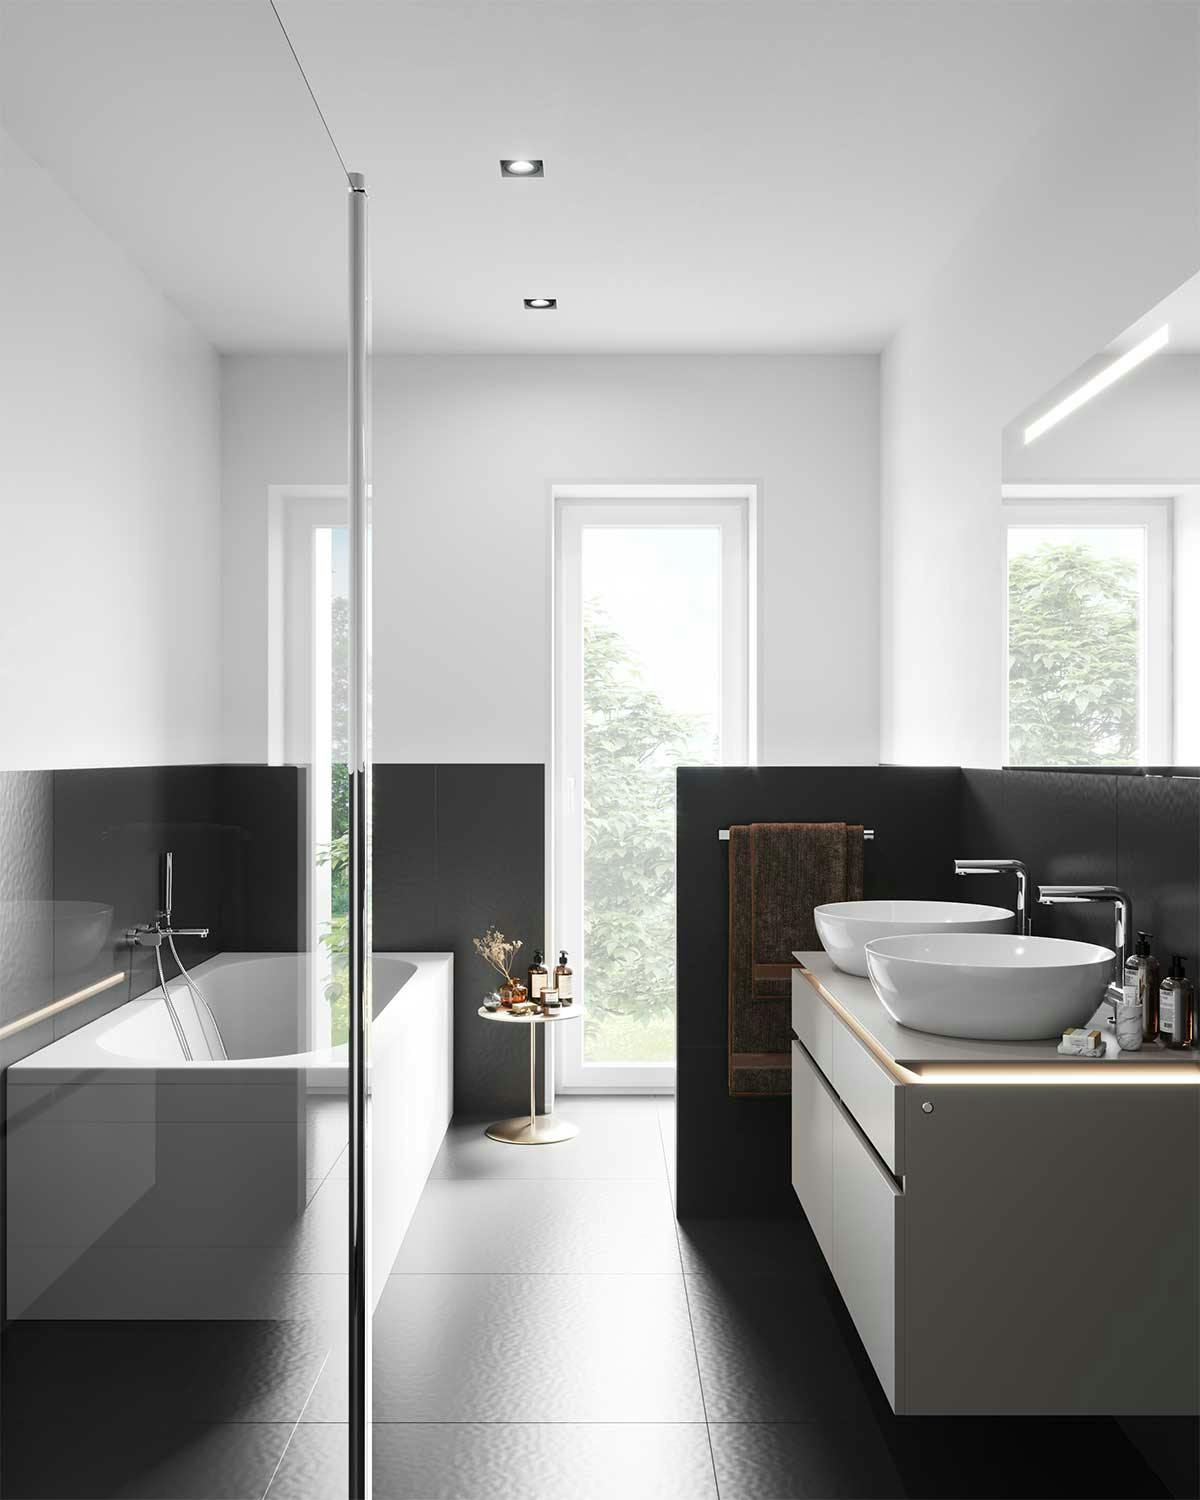 3D Immobilien Interior Visualisierung mit dem Gestaltungskonzept eines Badezimmers in einem Doppelhaus in Deutschland.